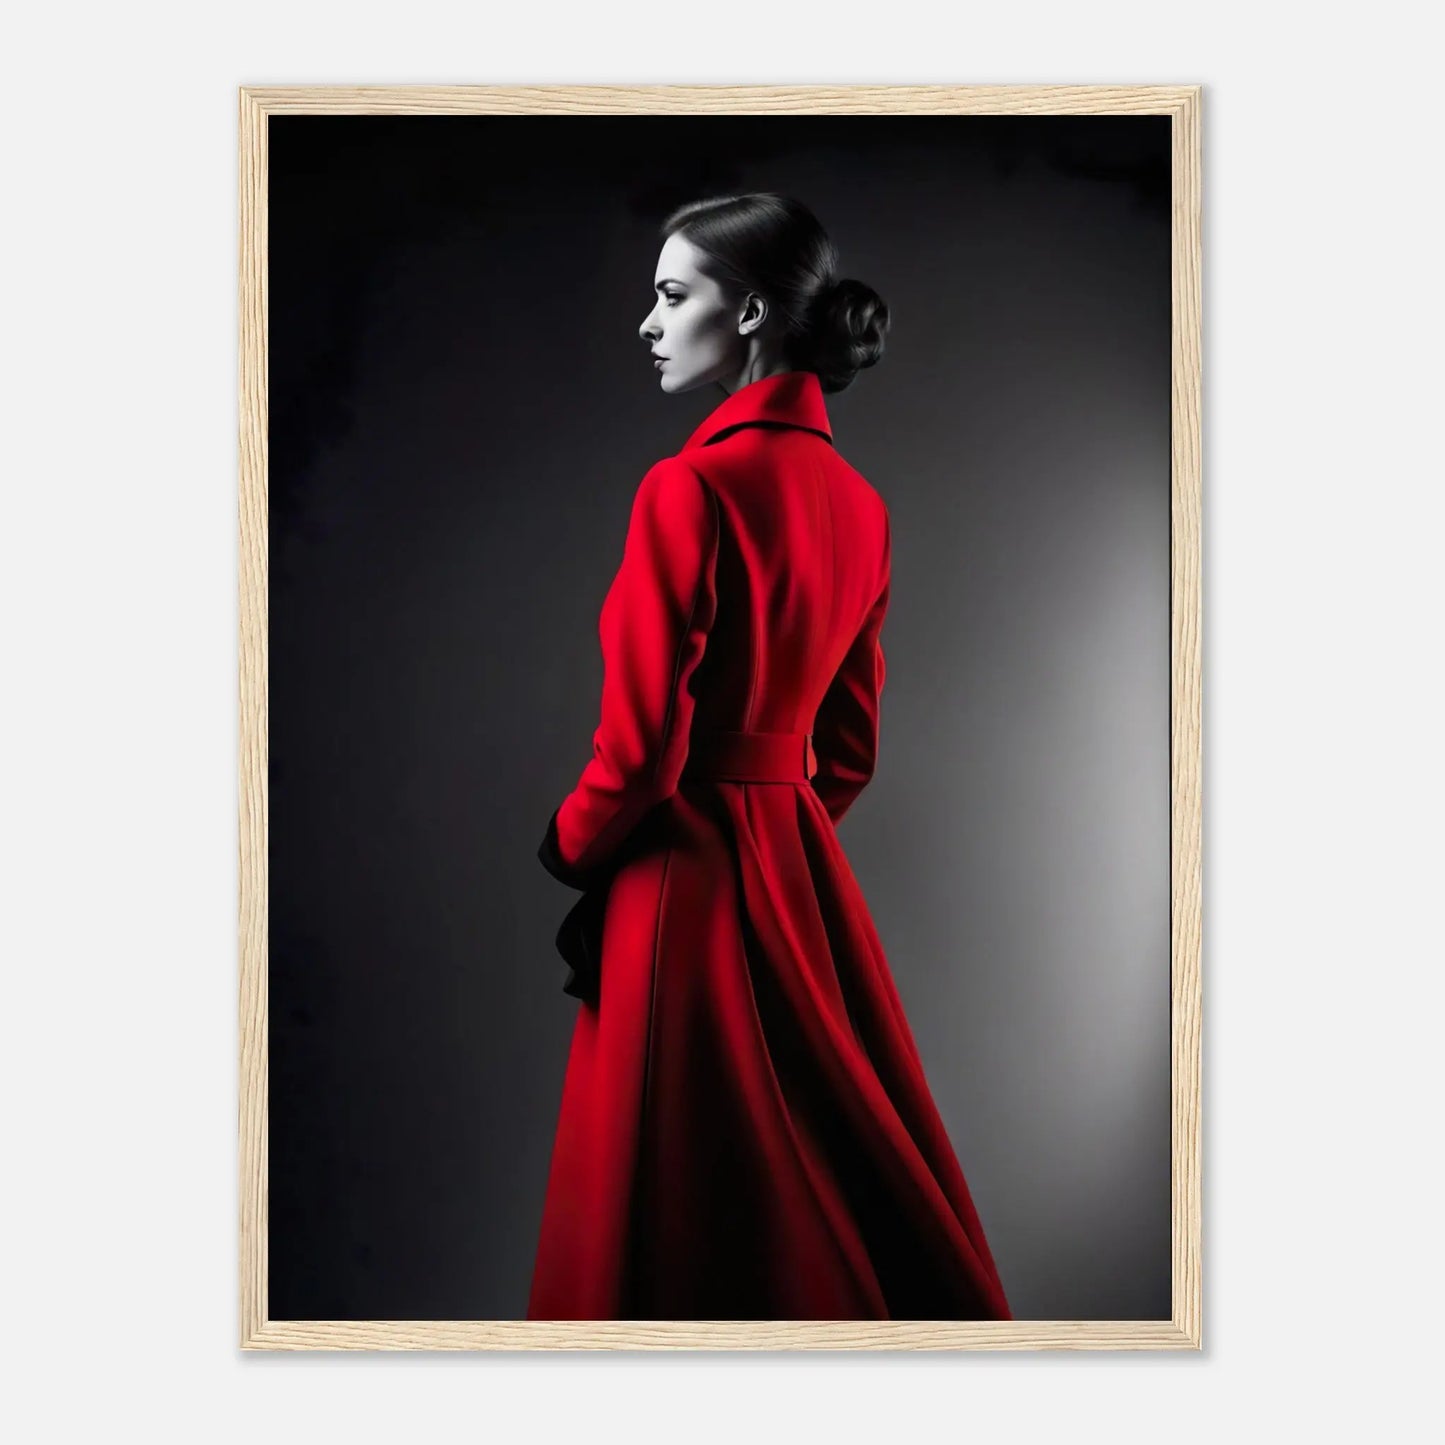 Gerahmtes Premium-Poster - Frau im roten Mantel - Schwarz-Weiß, KI-Kunst - RolConArt, Schwarz-Weiß mit Akzentfarben, 45x60-cm-18x24-Holzrahmen